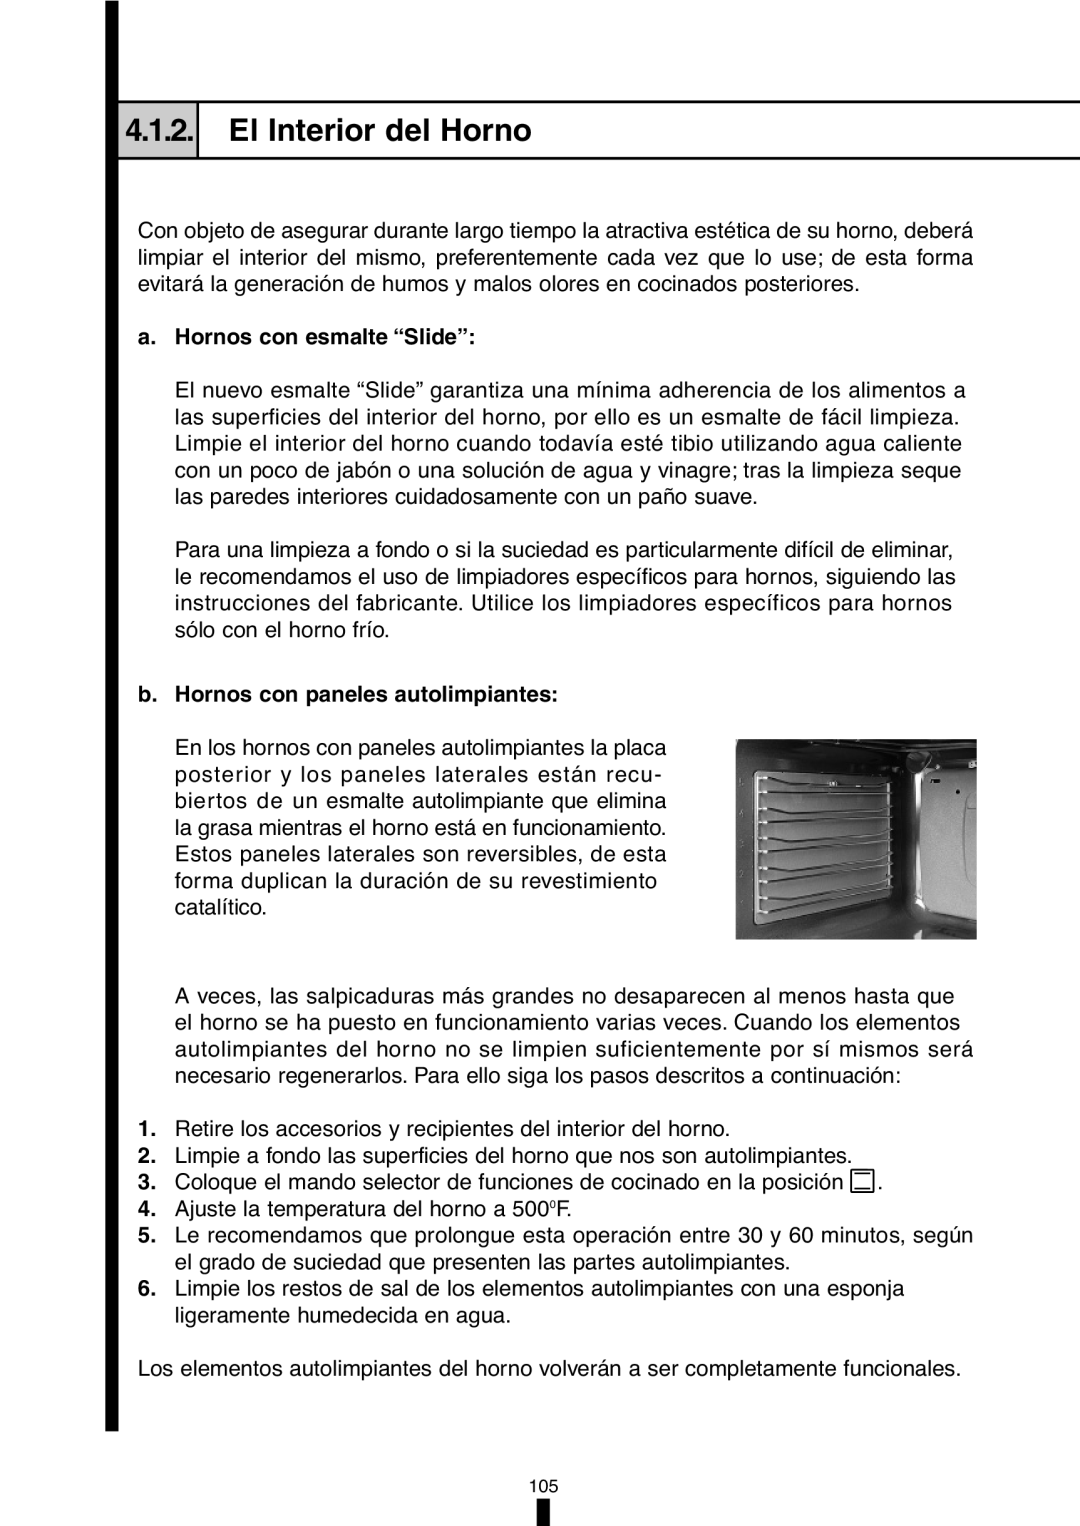 Fagor America 5HA-196X El Interior del Horno, a.Hornos con esmalte “Slide”, b.Hornos con paneles autolimpiantes, 4.1.2 